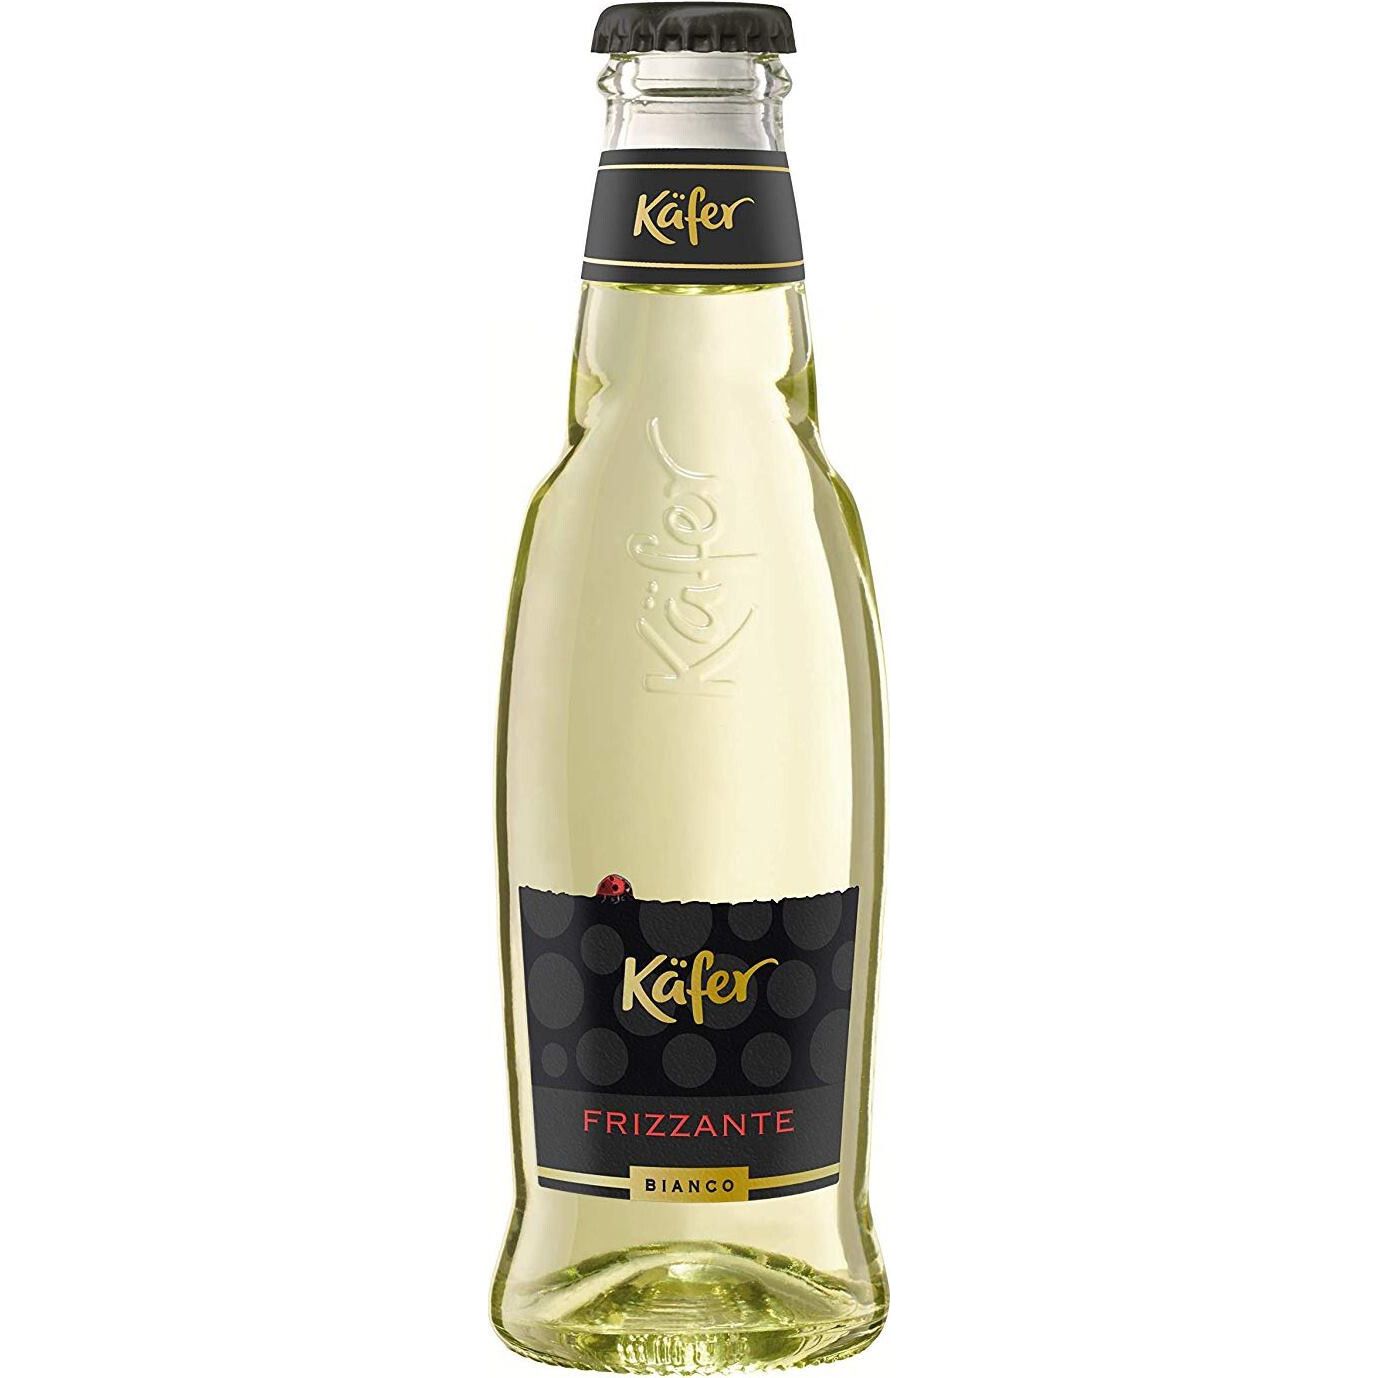 Игристое вино Kafer Frizzante Bianco Secco, белое, сухое, 10%, 0,2 л - фото 1